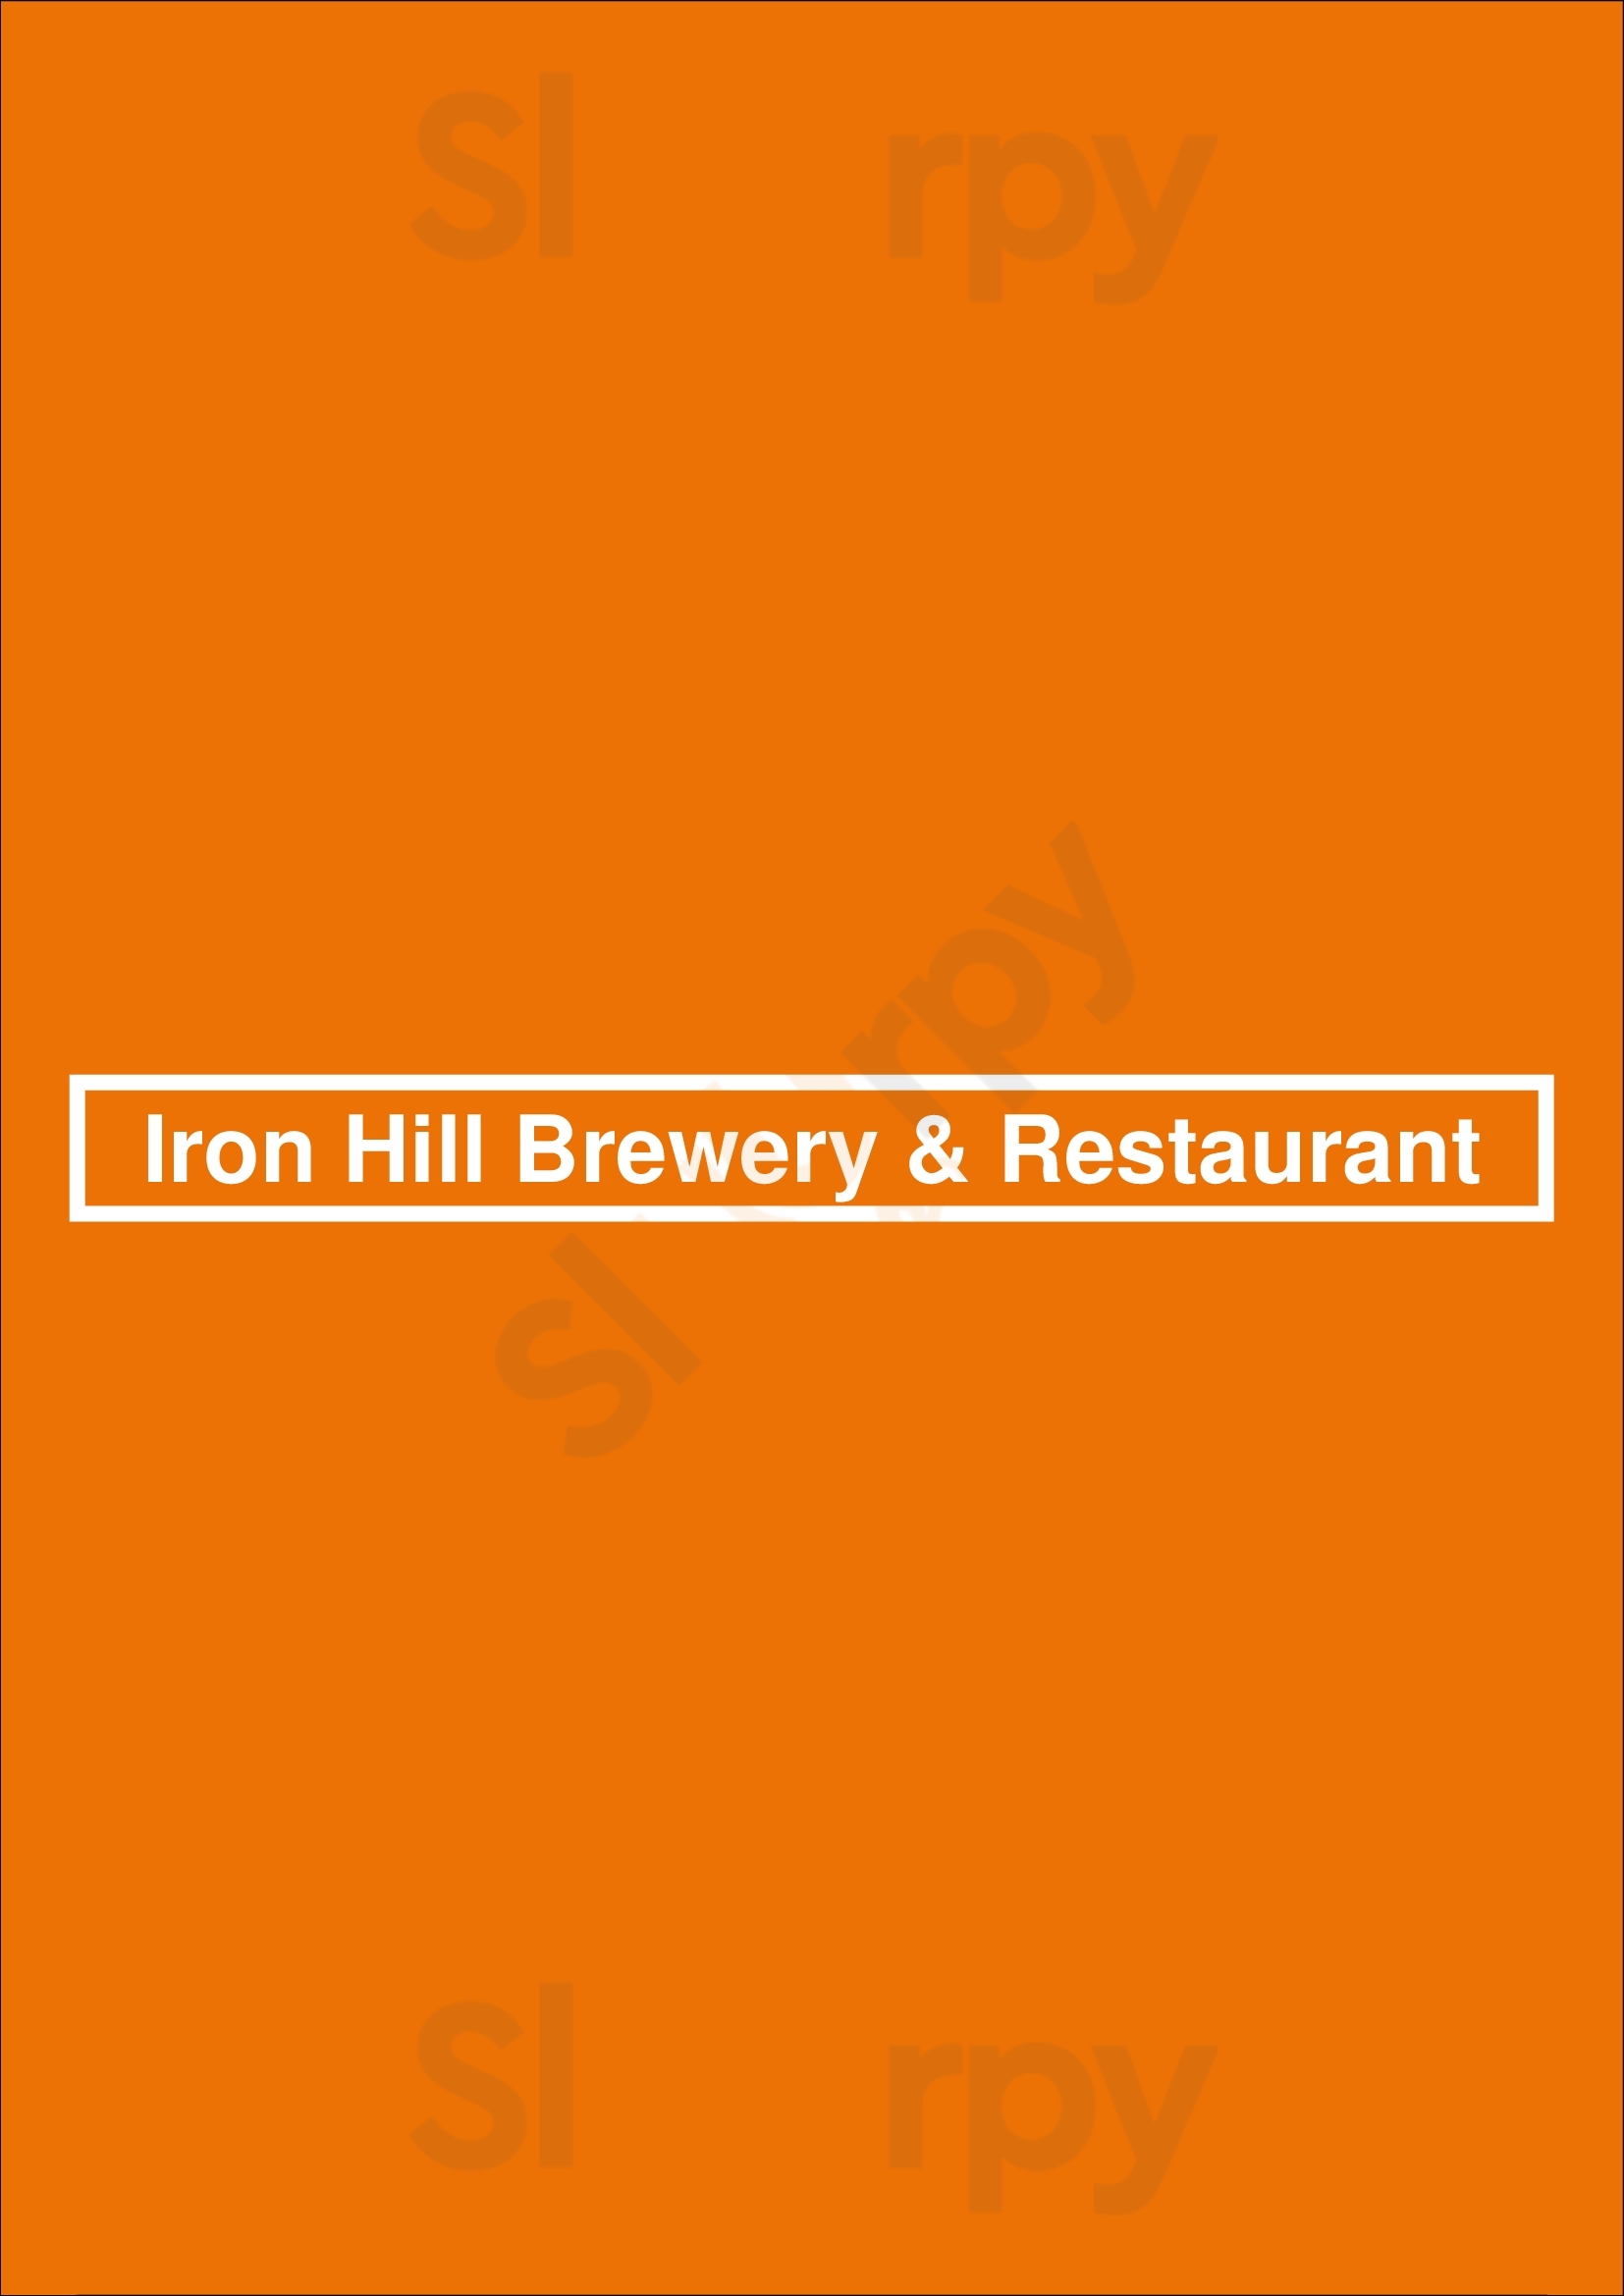 Iron Hill Brewery & Restaurant Greenville Menu - 1